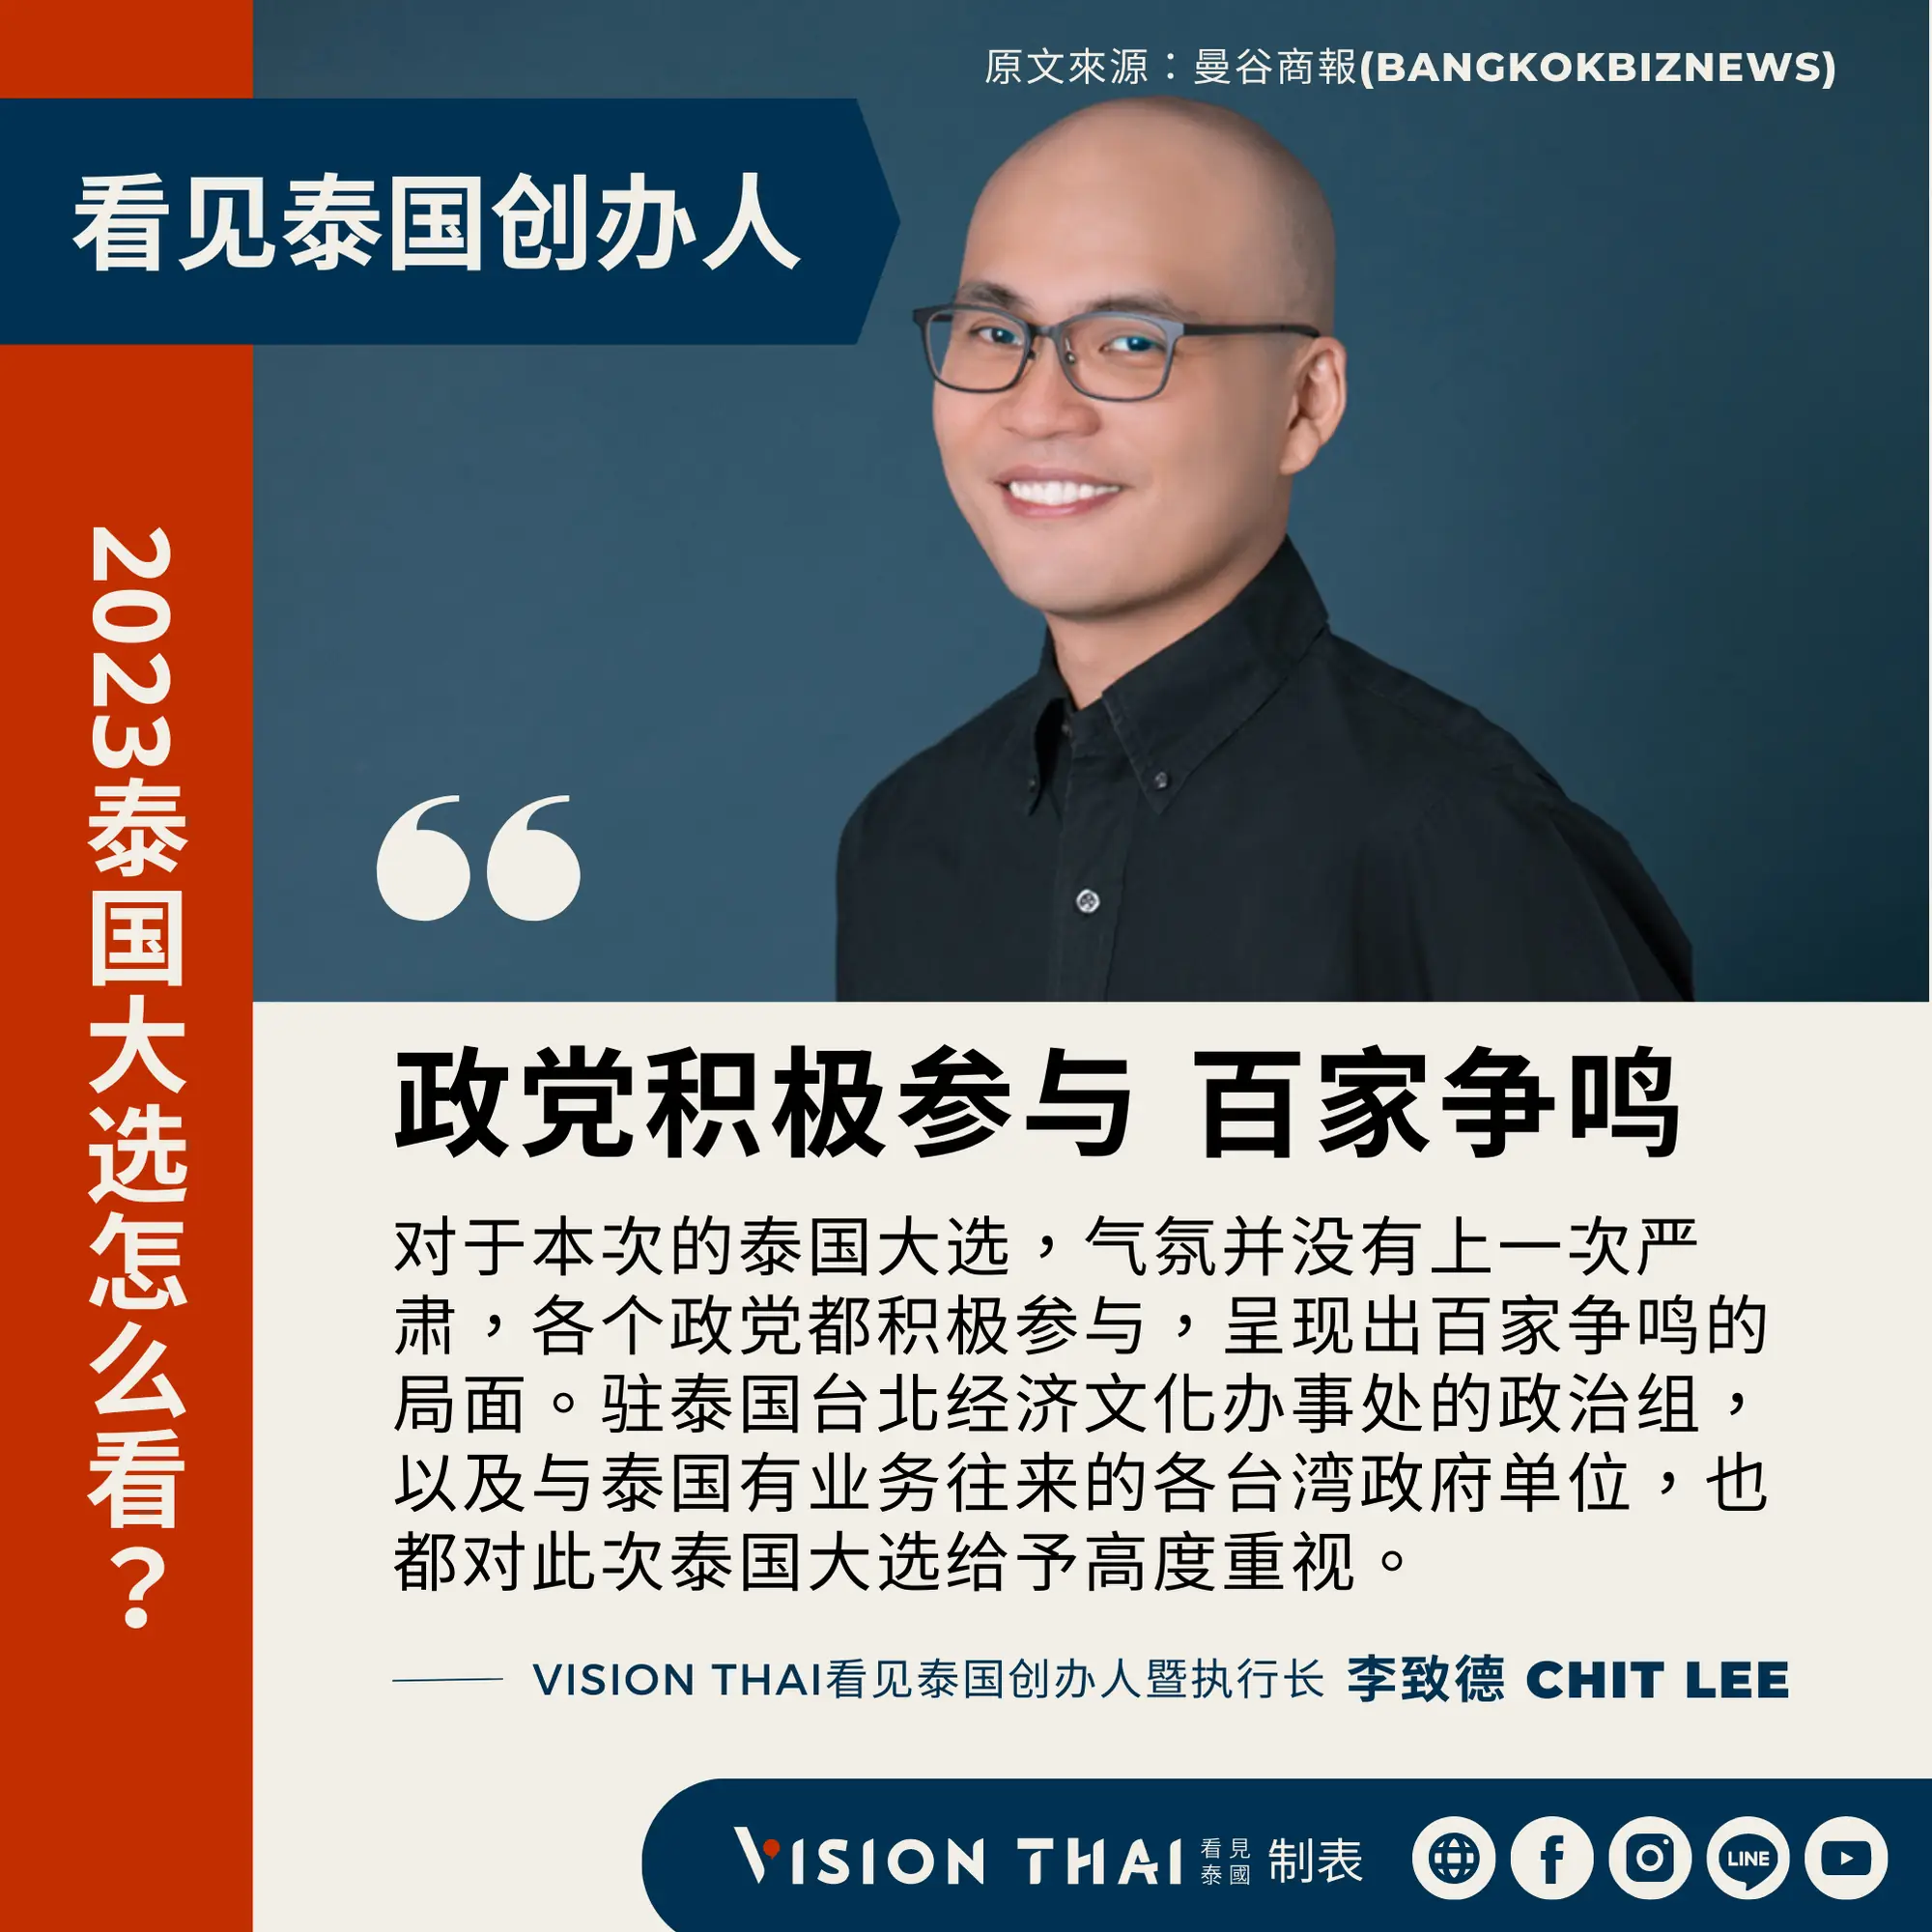 《曼谷商报》采访Vision Thai 看见泰国媒体创办人暨执行长李致德(Chit Lee)对泰国新政府的期许（来源：看见泰国制图）